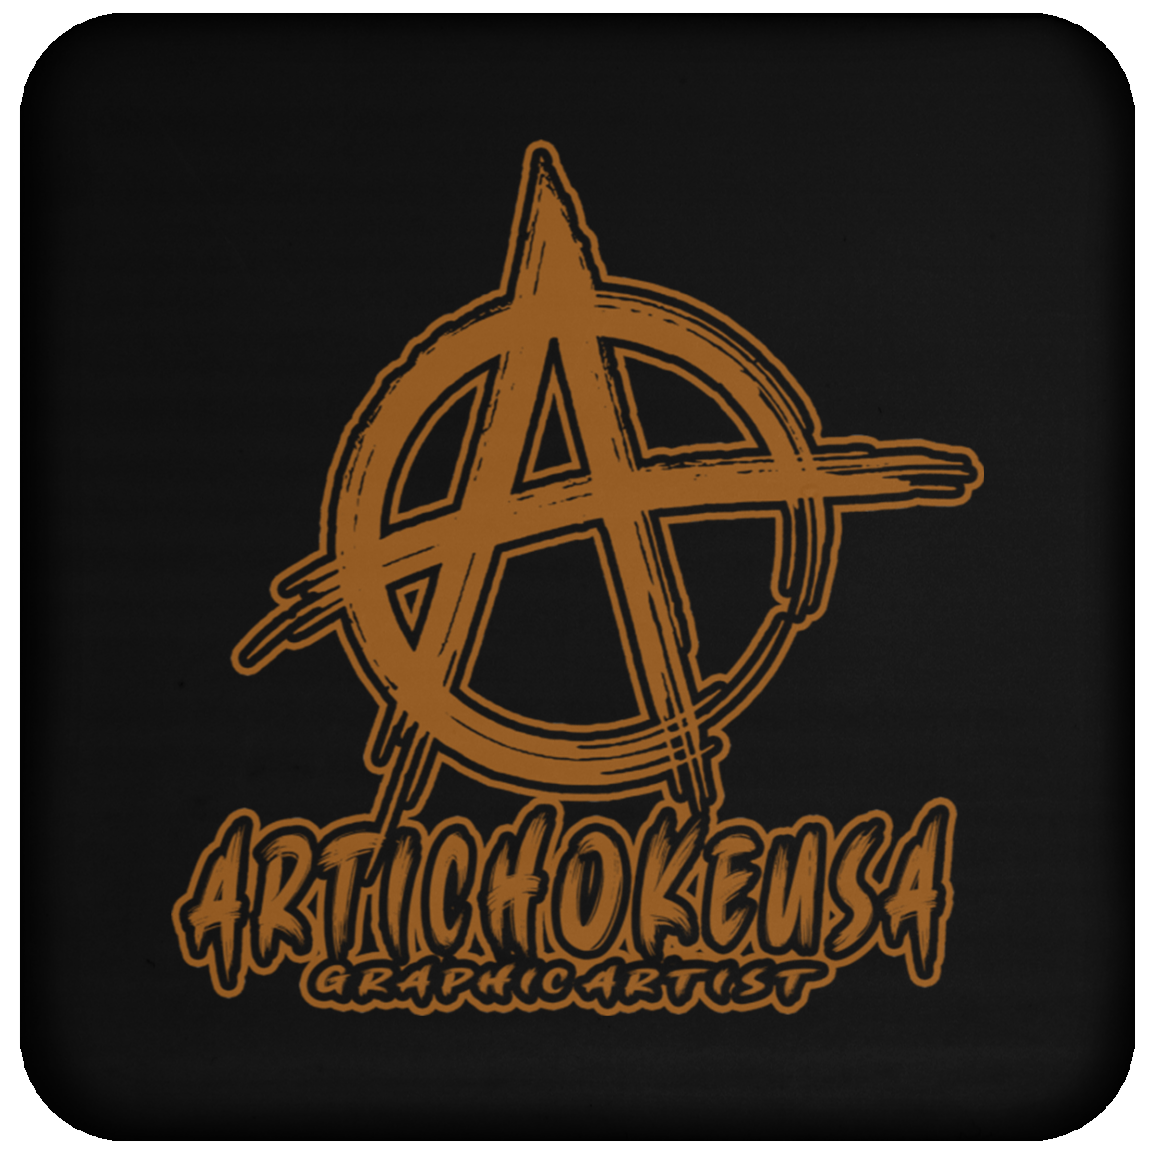 ArtichokeUSA custom design with text #14. Coaster